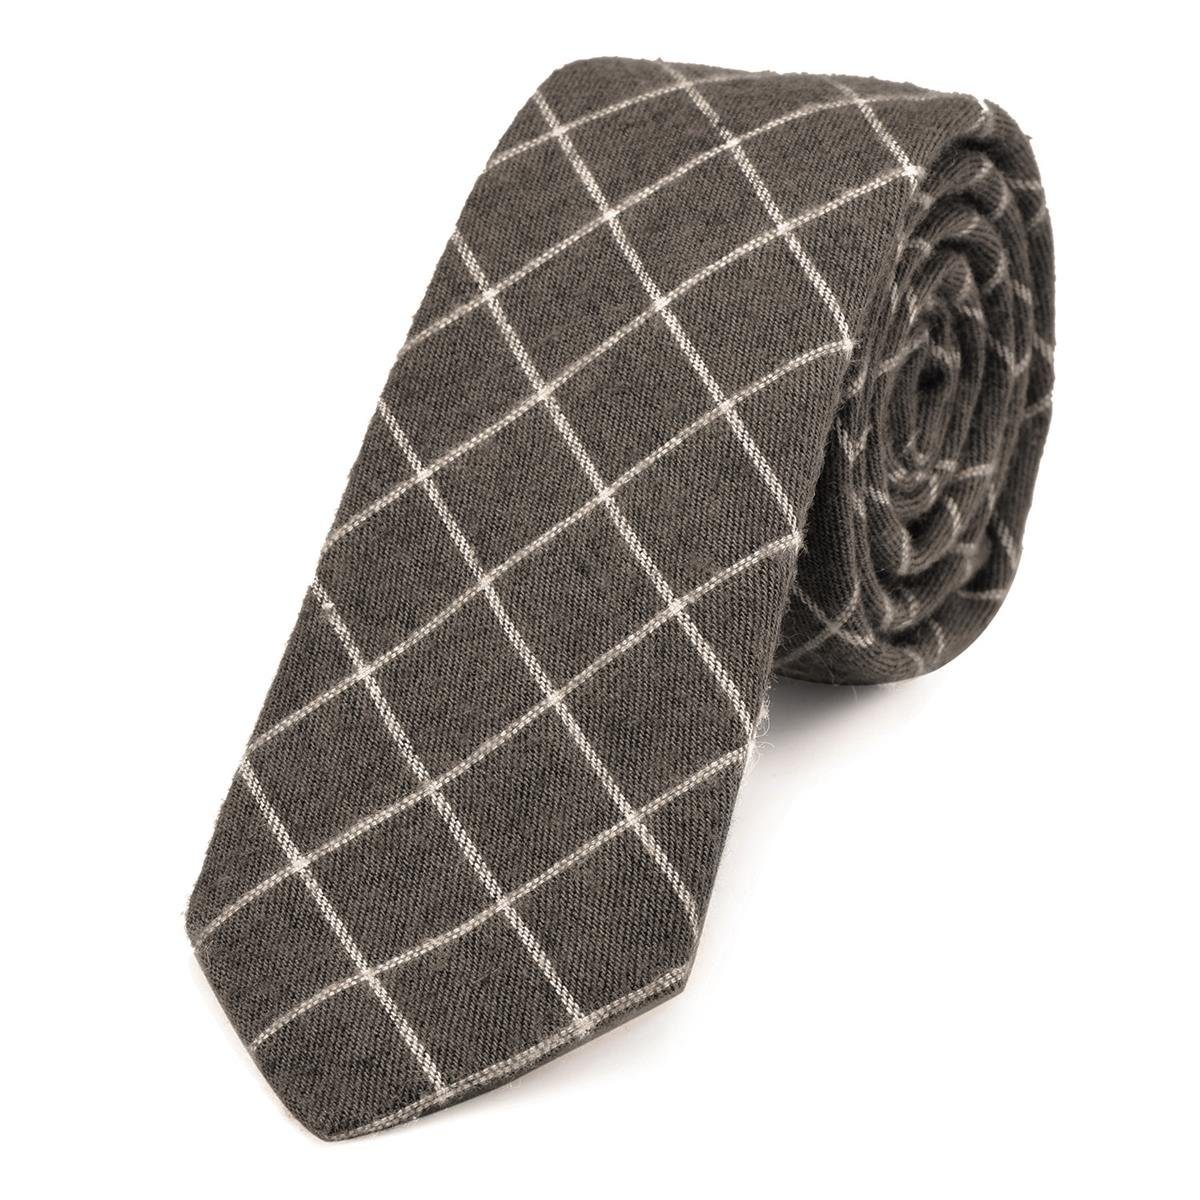 DonDon Krawatte Herren Krawatte 6 cm mit Karos oder Streifen (Packung, 1-St., 1x Krawatte) Baumwolle, kariert oder gestreift, für Büro oder festliche Veranstaltungen braun kariert | Breite Krawatten